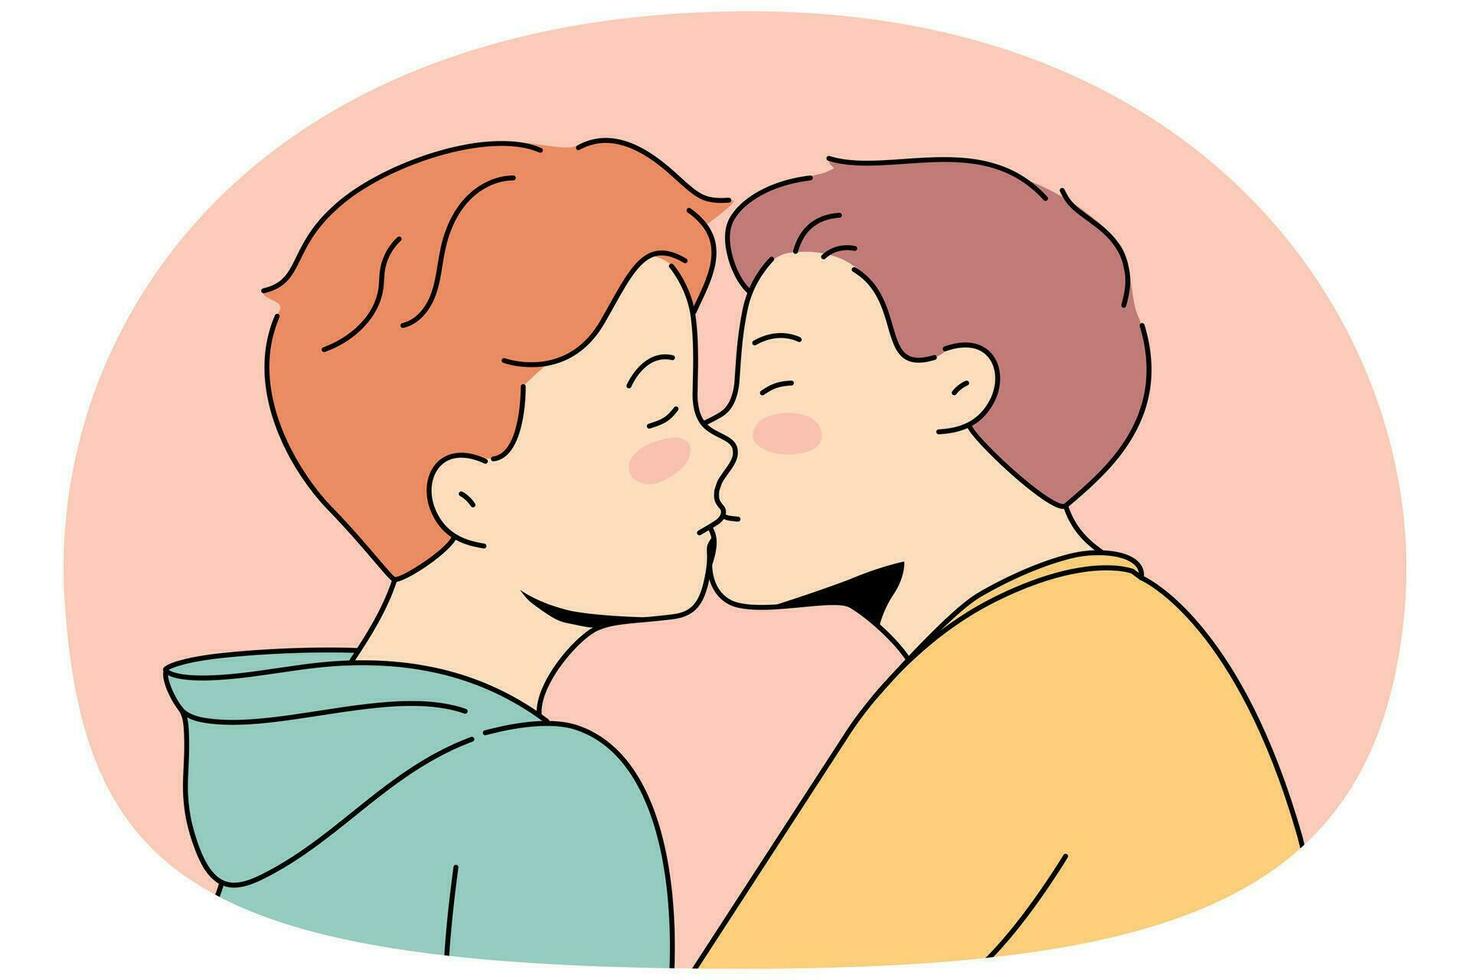 homo paar zoenen tonen liefde en affectie. homoseksueel mannen demonstreren verhoudingen. lgbt gemeenschap, vrijheid van rechten. vector illustratie.